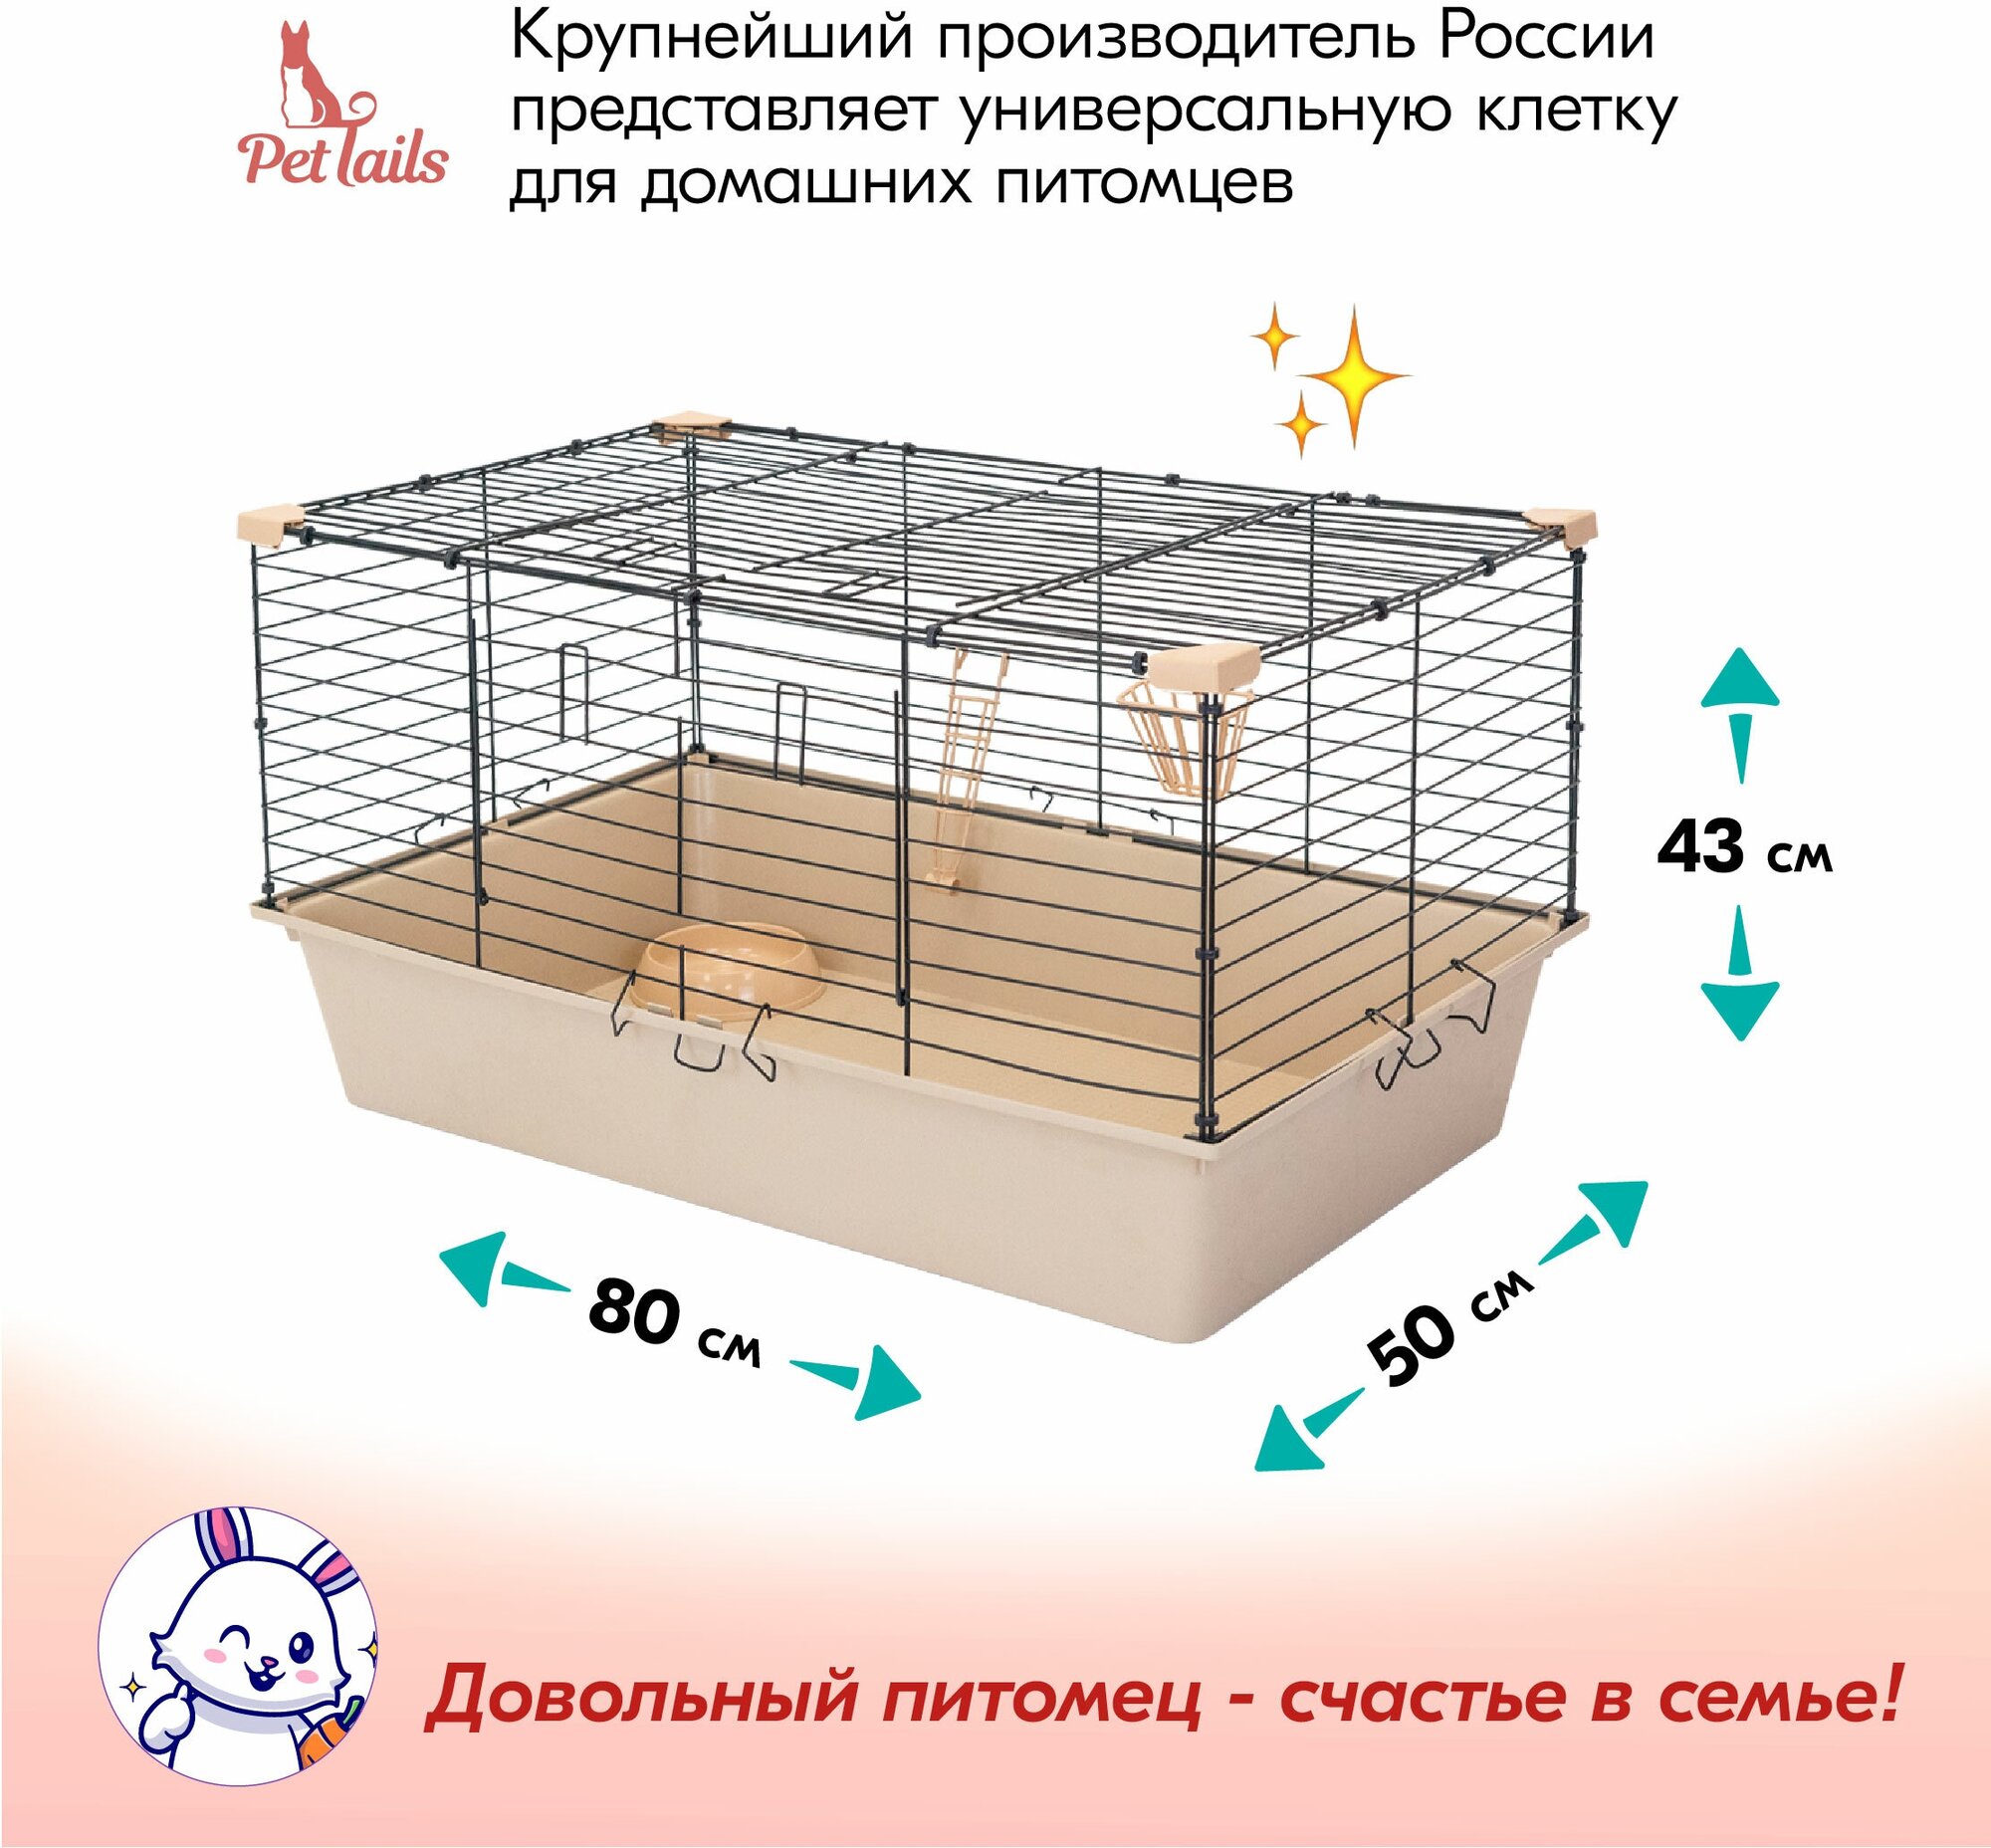 Клетка для грызунов для кроликов "PetTails" ральф, складная, шаг прута 18мм, 80*50*h43см (+миска, 2кормушки) беж-черн - фотография № 2